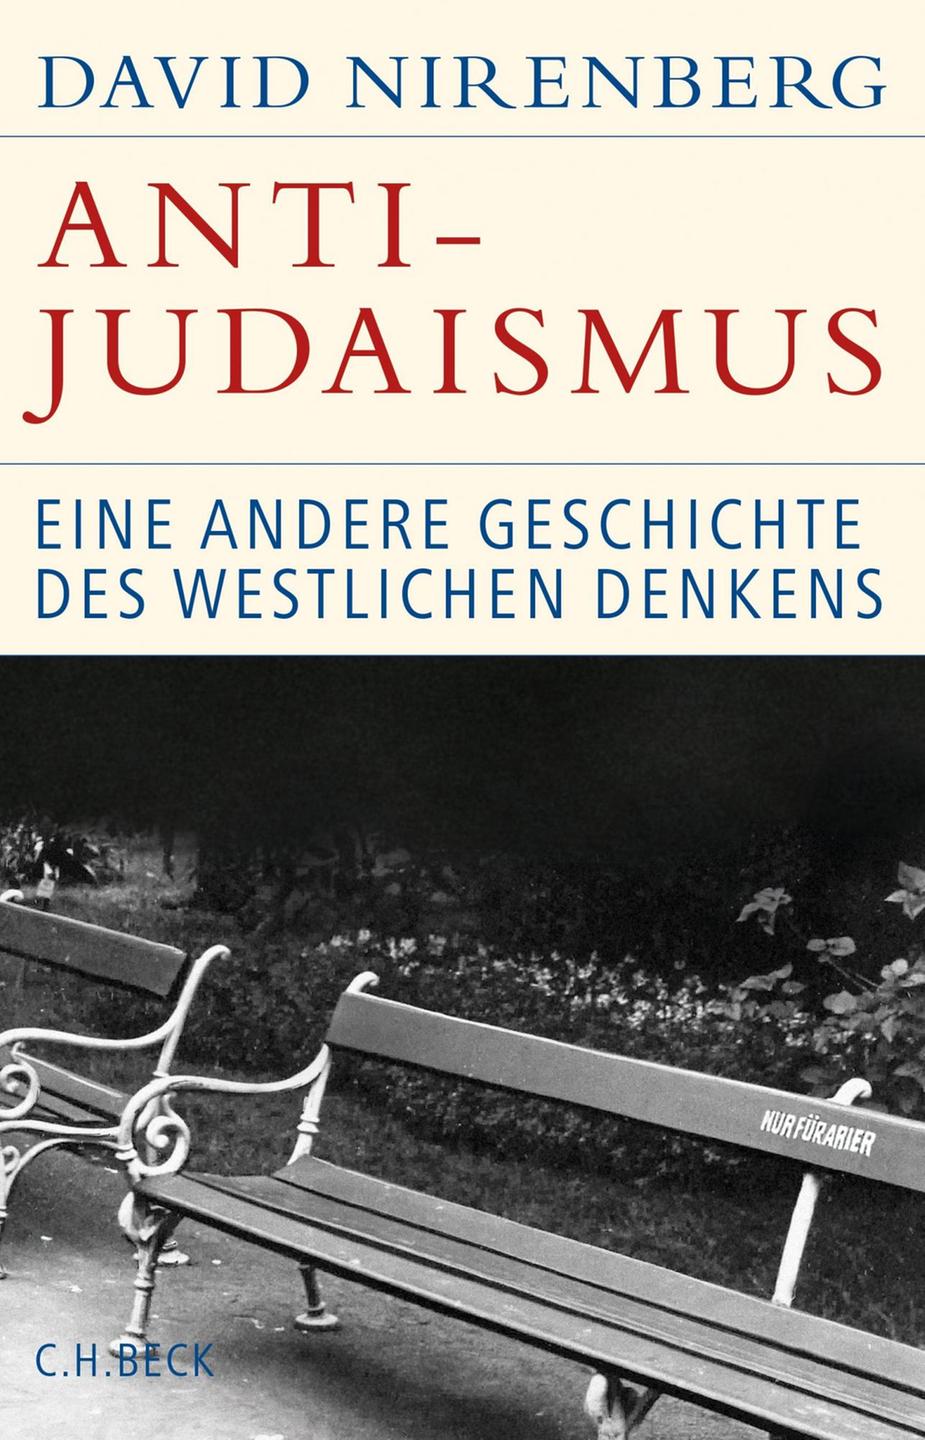 David Nirenberg: Anti-Judaismus. Eine andere Geschichte westlichen Denkens